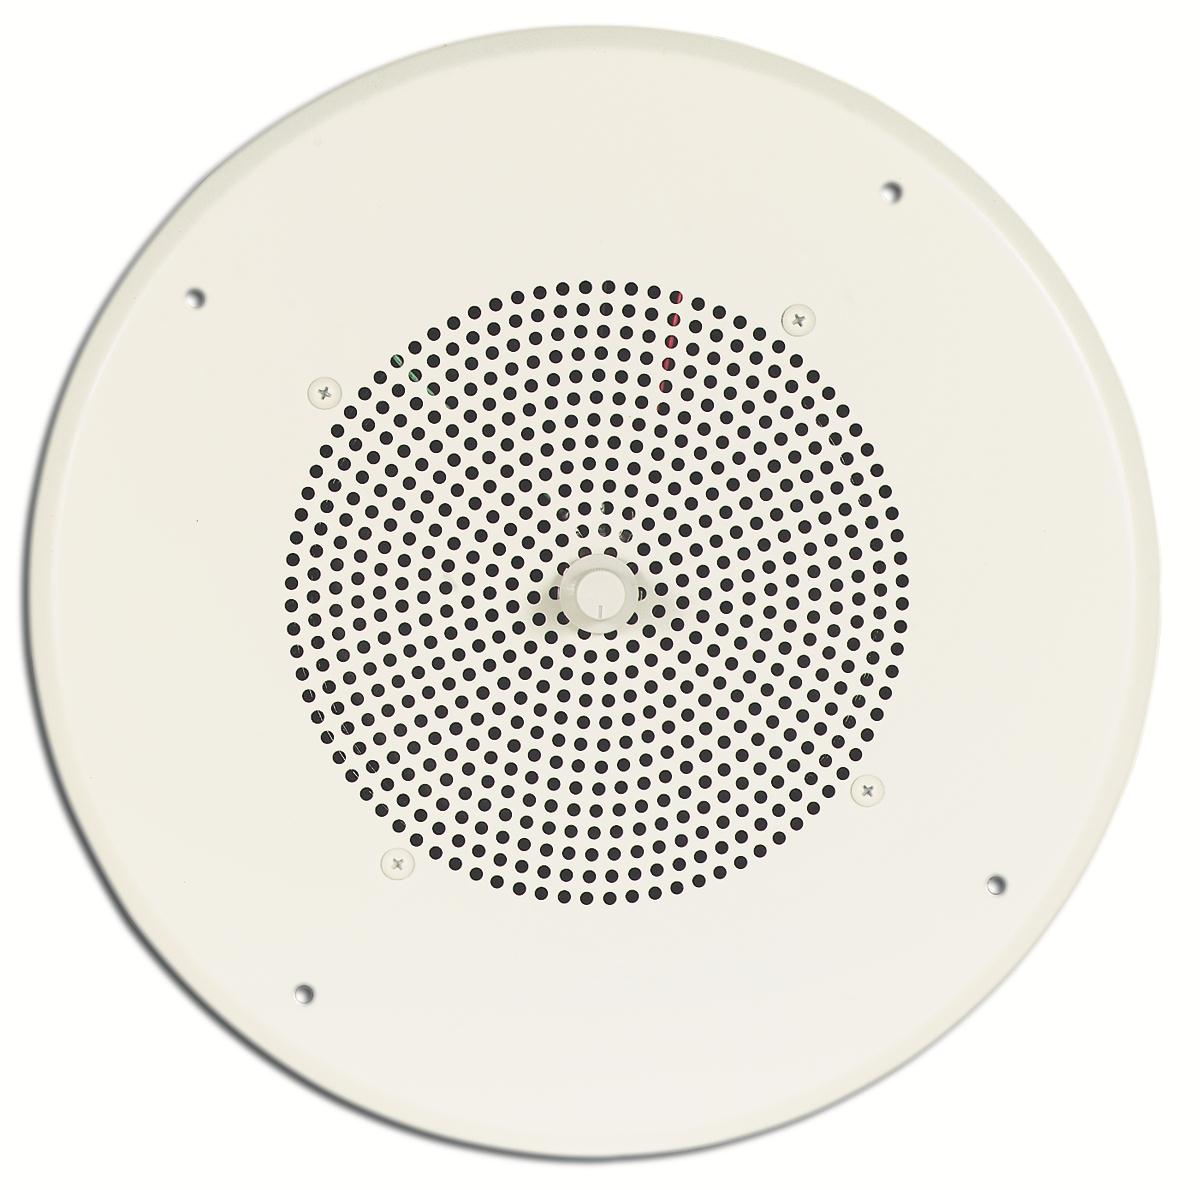 Bogen S86T725PG8WVK Speaker (Knob Volume Control) - Off White CEILINGKNOB - The Telecom Spot